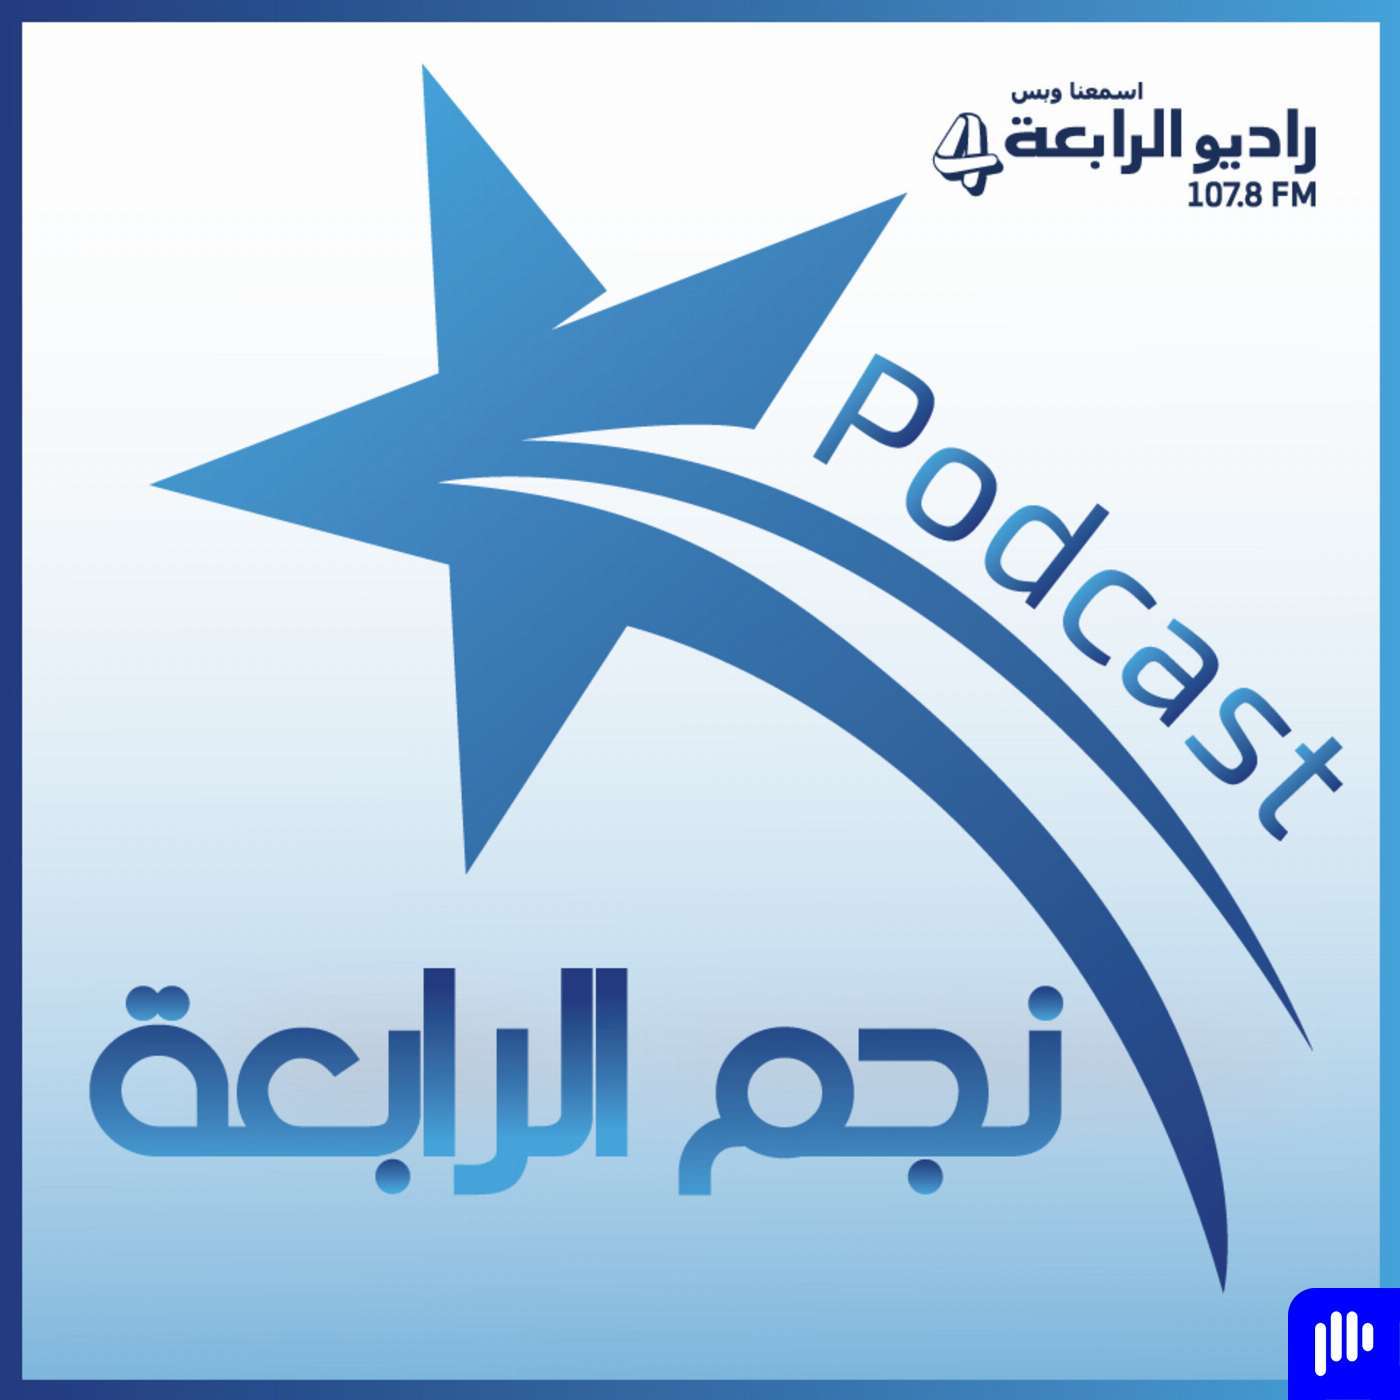 محمد فراج يتحدث لراديو الرابعة عن ترشيح فيلمه فوي فوي فوي لأوسكار , ويختار احمد عز في هذه المهمة